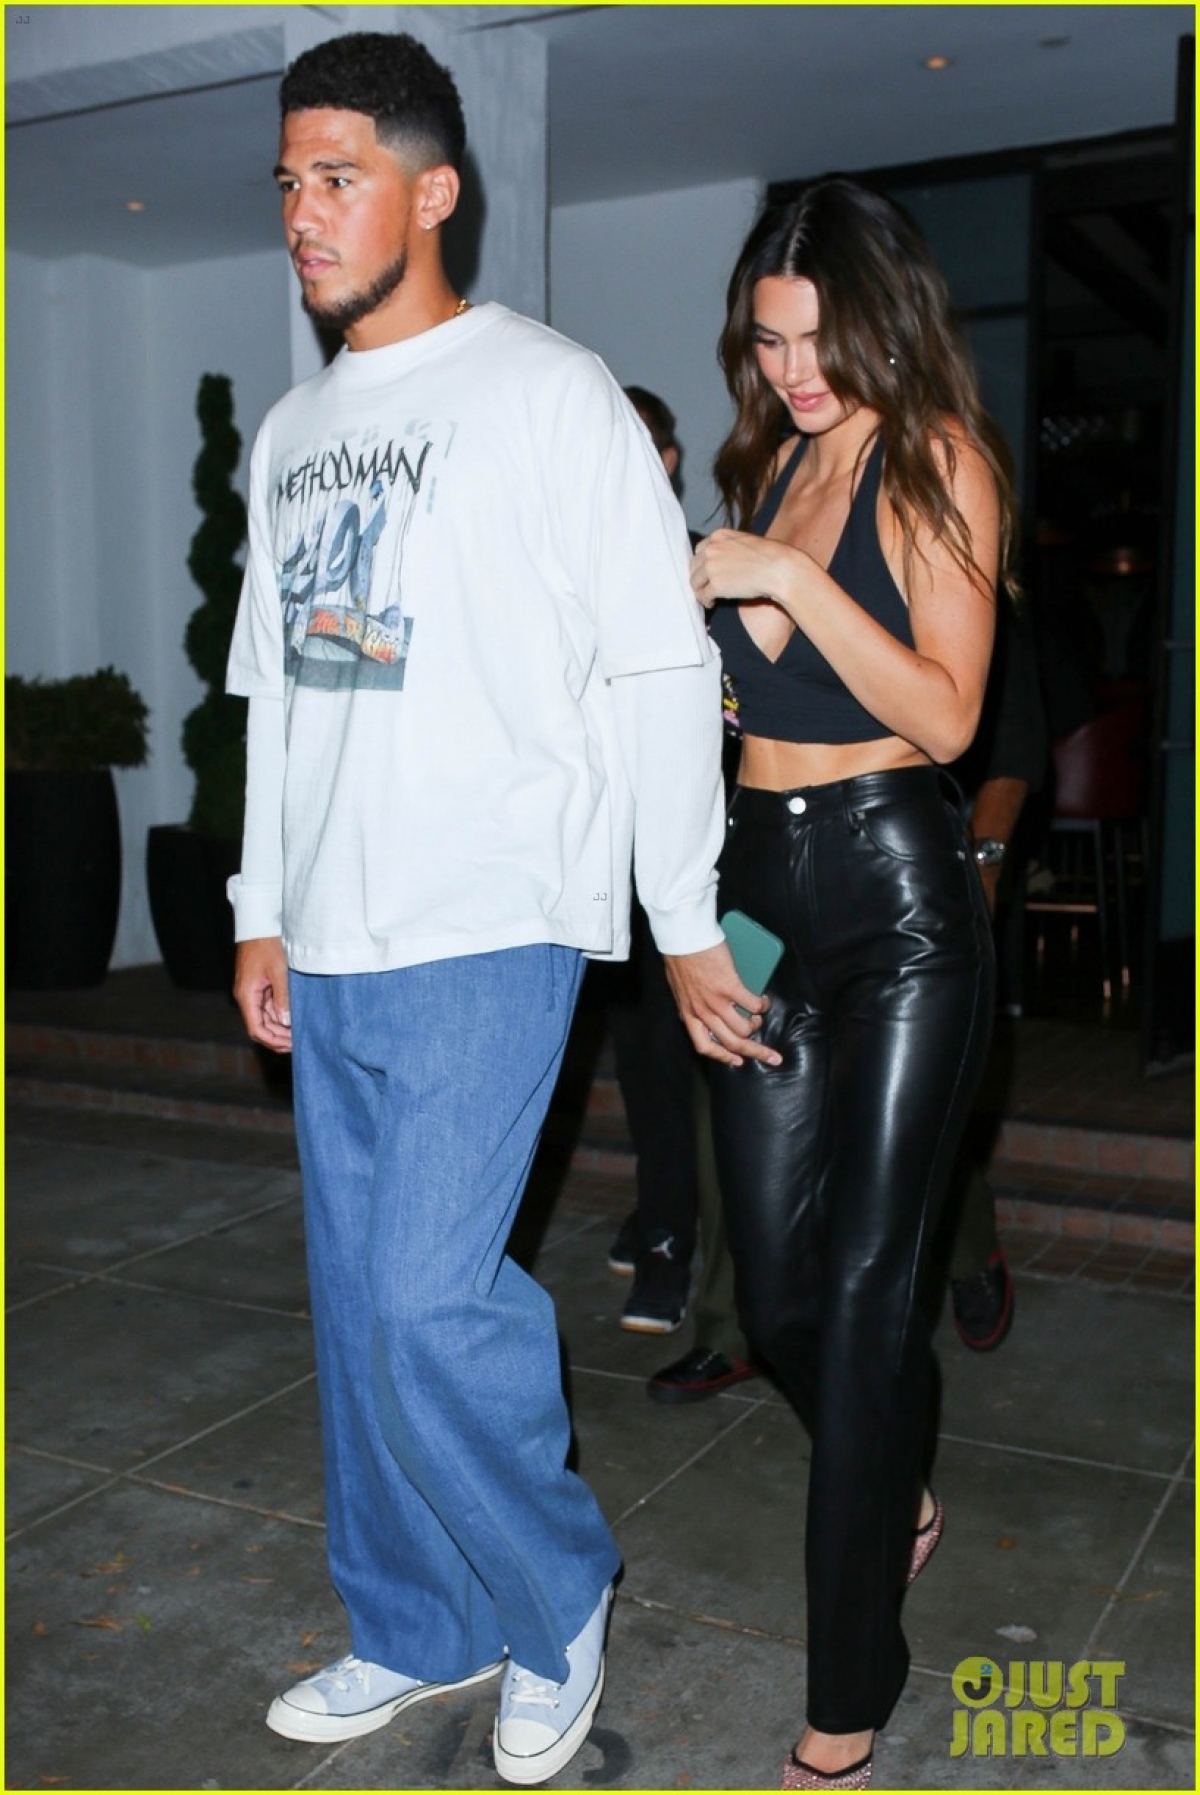 Kendall Jenner xinh đẹp đi chơi đêm cùng bạn trai sau khi tái hợp - Ảnh 1.